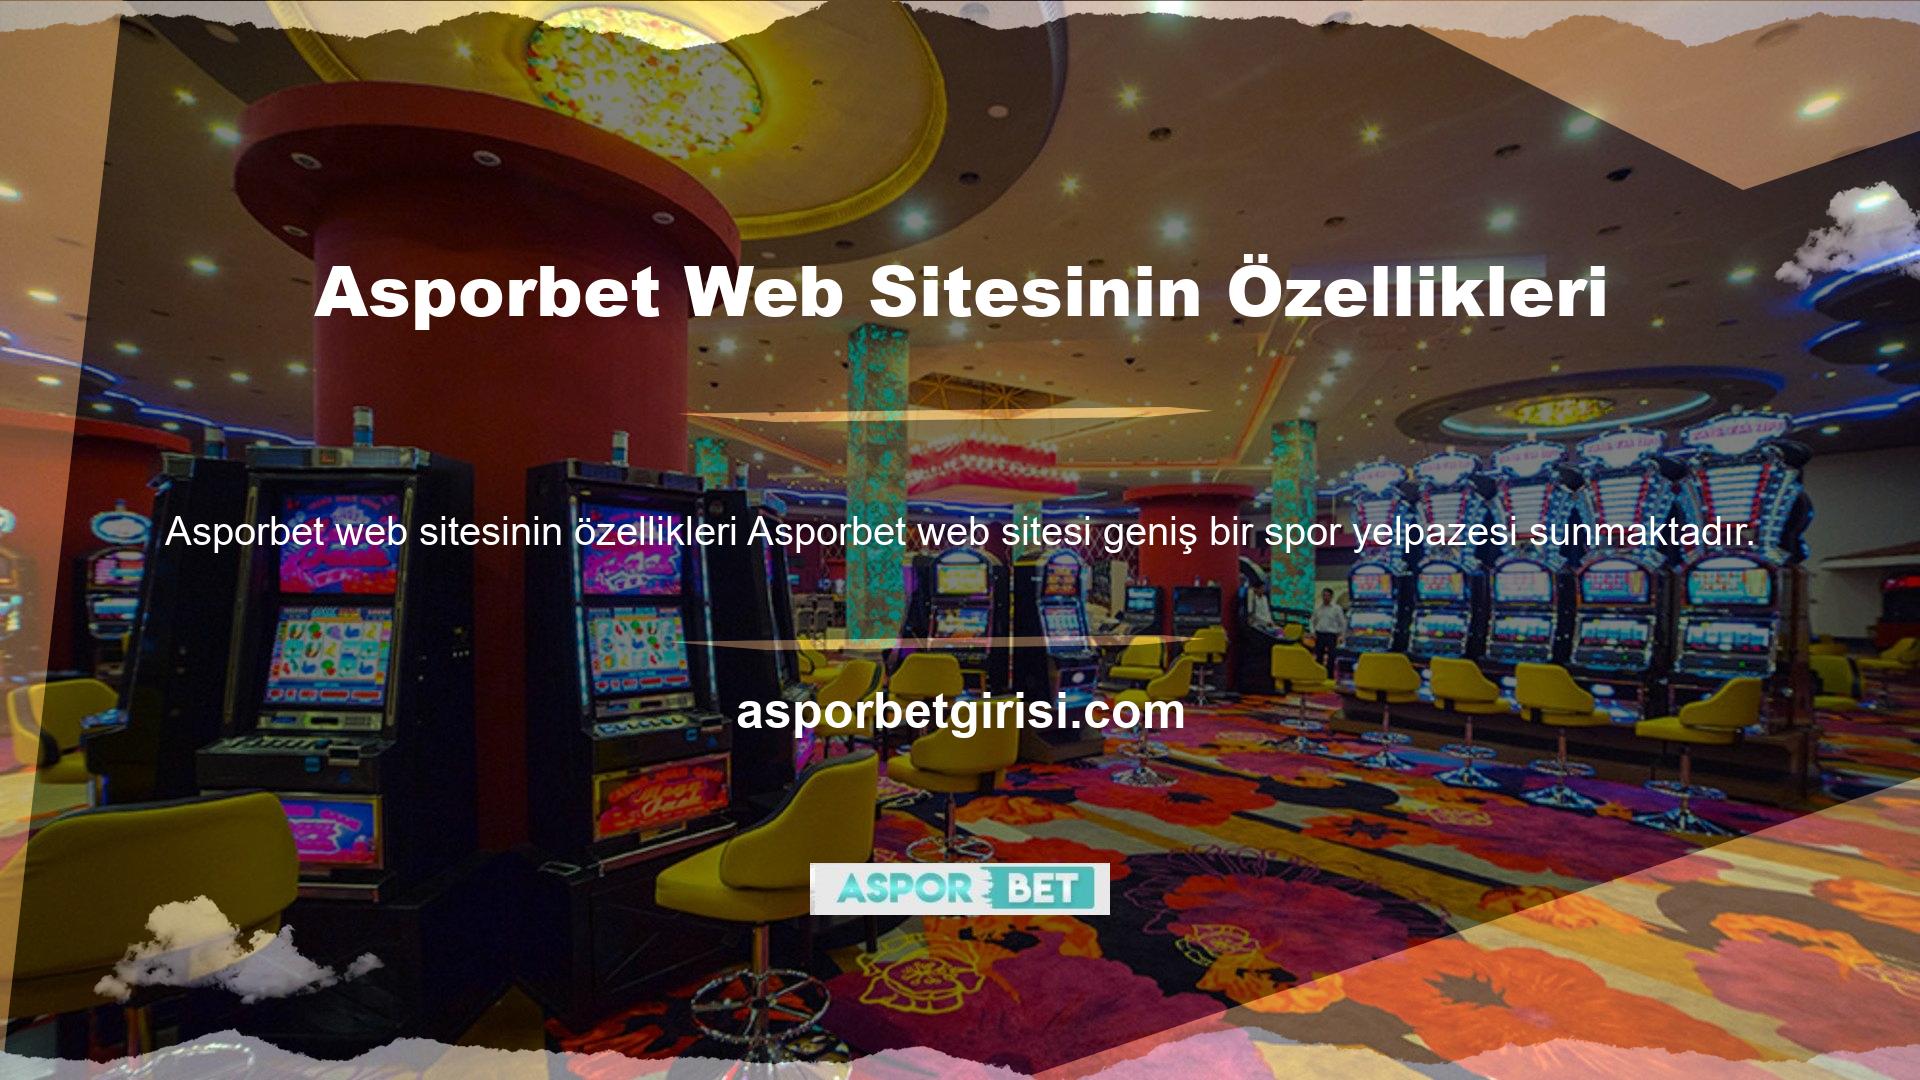 Yazının başında da belirttiğimiz gibi Asporbet sitesinin bir özelliği de spor tahminleri bölümünün bulunmasıdır